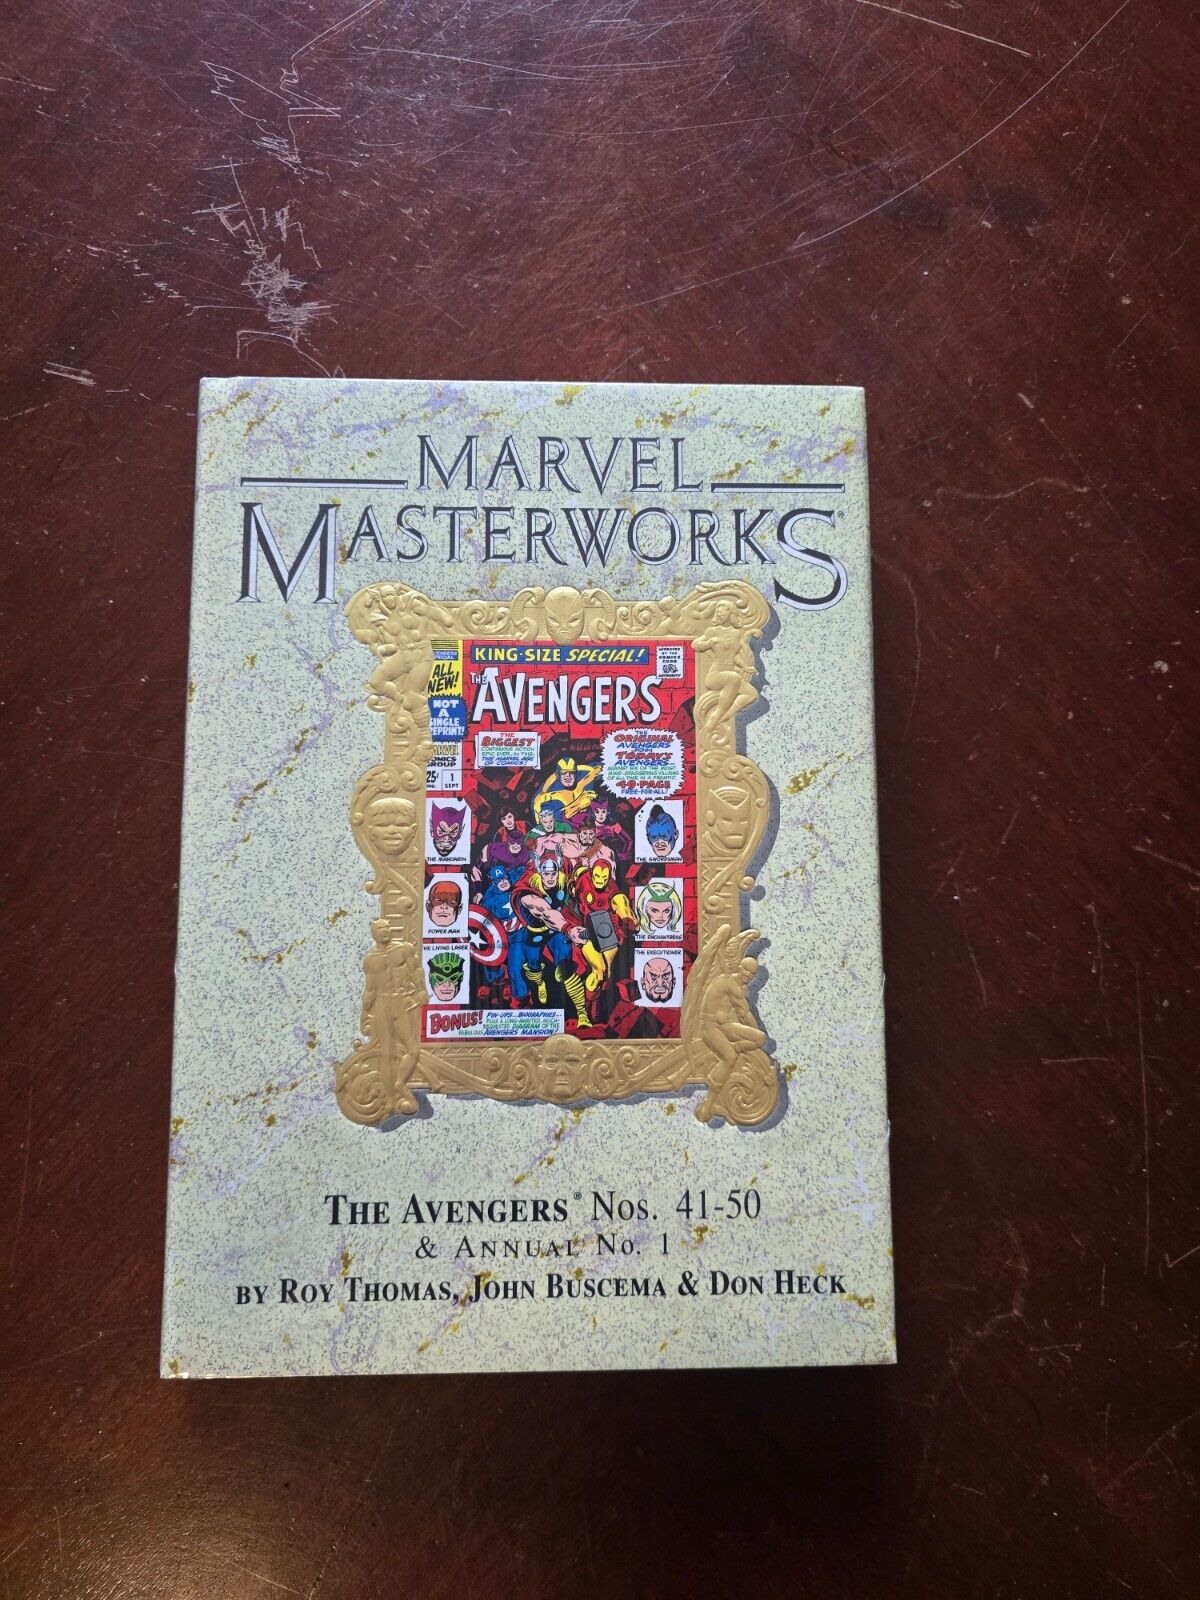 Marvel Masterworks Variant 54 Avengers Vol. 5 Brand new in shrink wrap